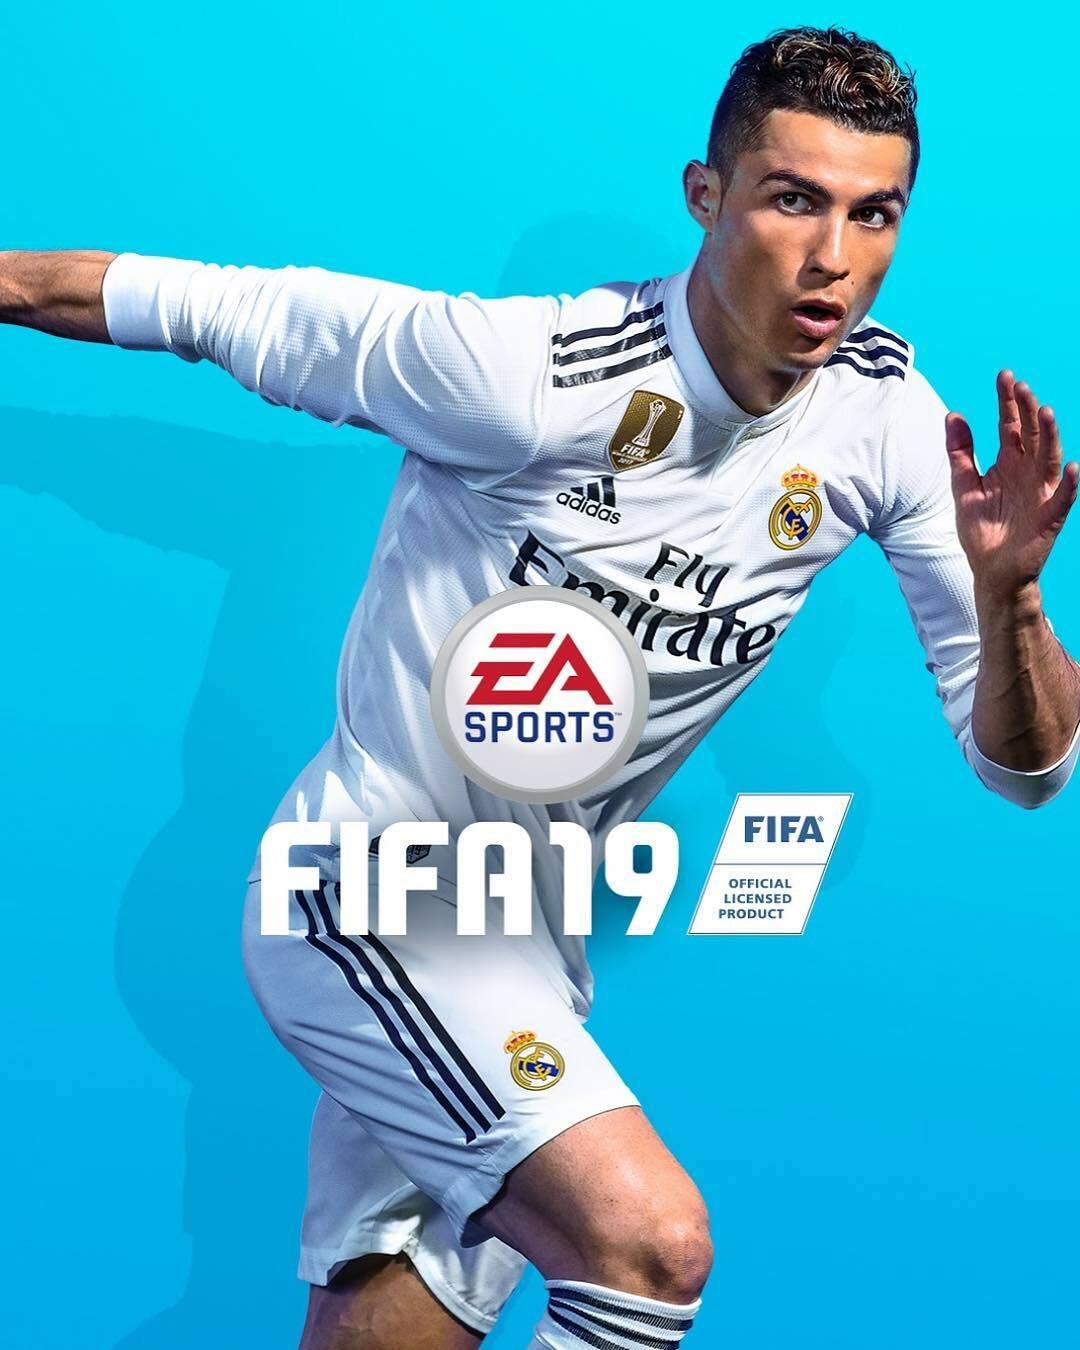 FIFA 19 sarà in vendita nei negozi dal 28 settembre 2018